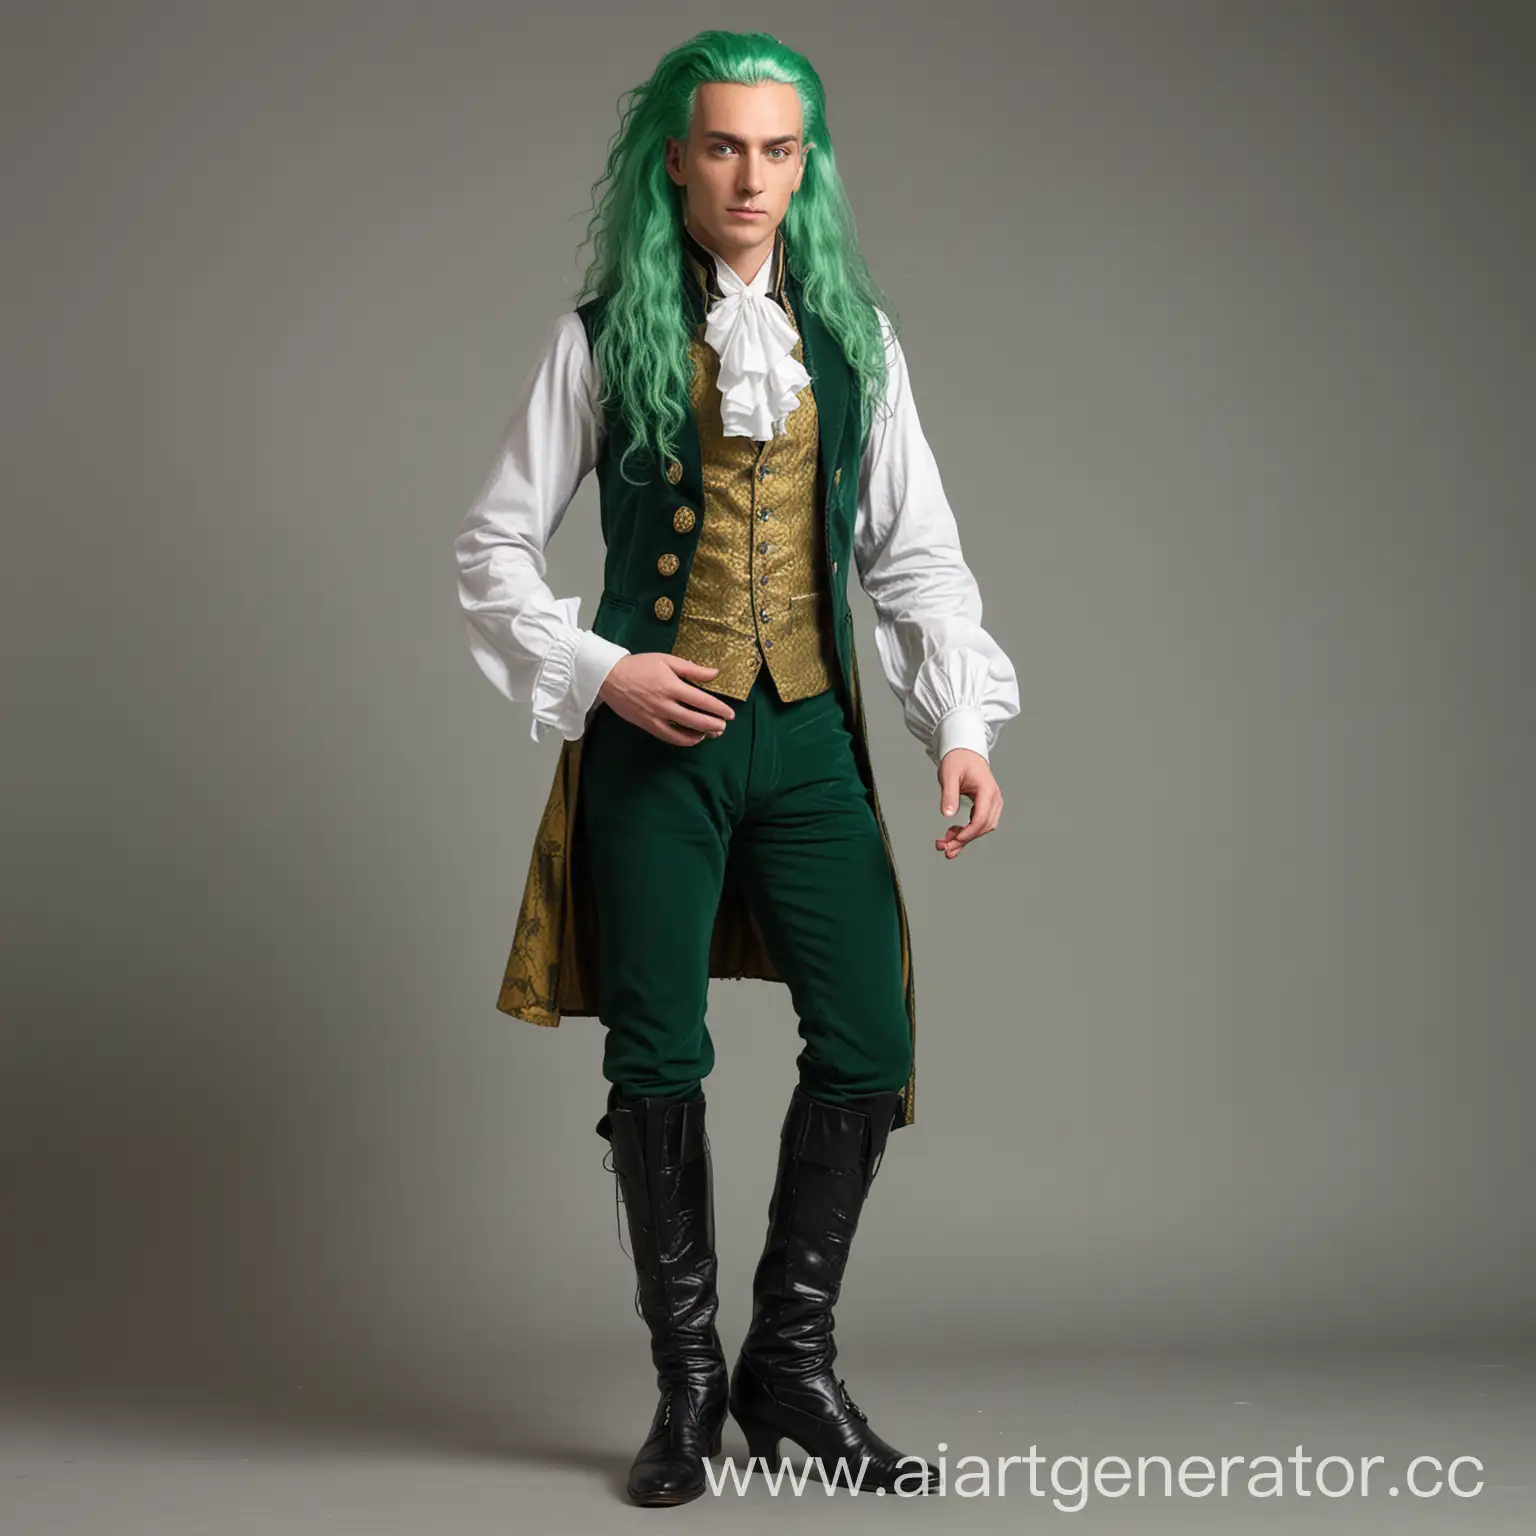 Высокий мужчина с длинными зелёными волосами и шестью зелёными крыльями в чёрно-зелёно-золотом камзоле восемнадцатого века и чёрных туфлях на каблуке с зелёной подошвой и нифритова-зелёными глазами